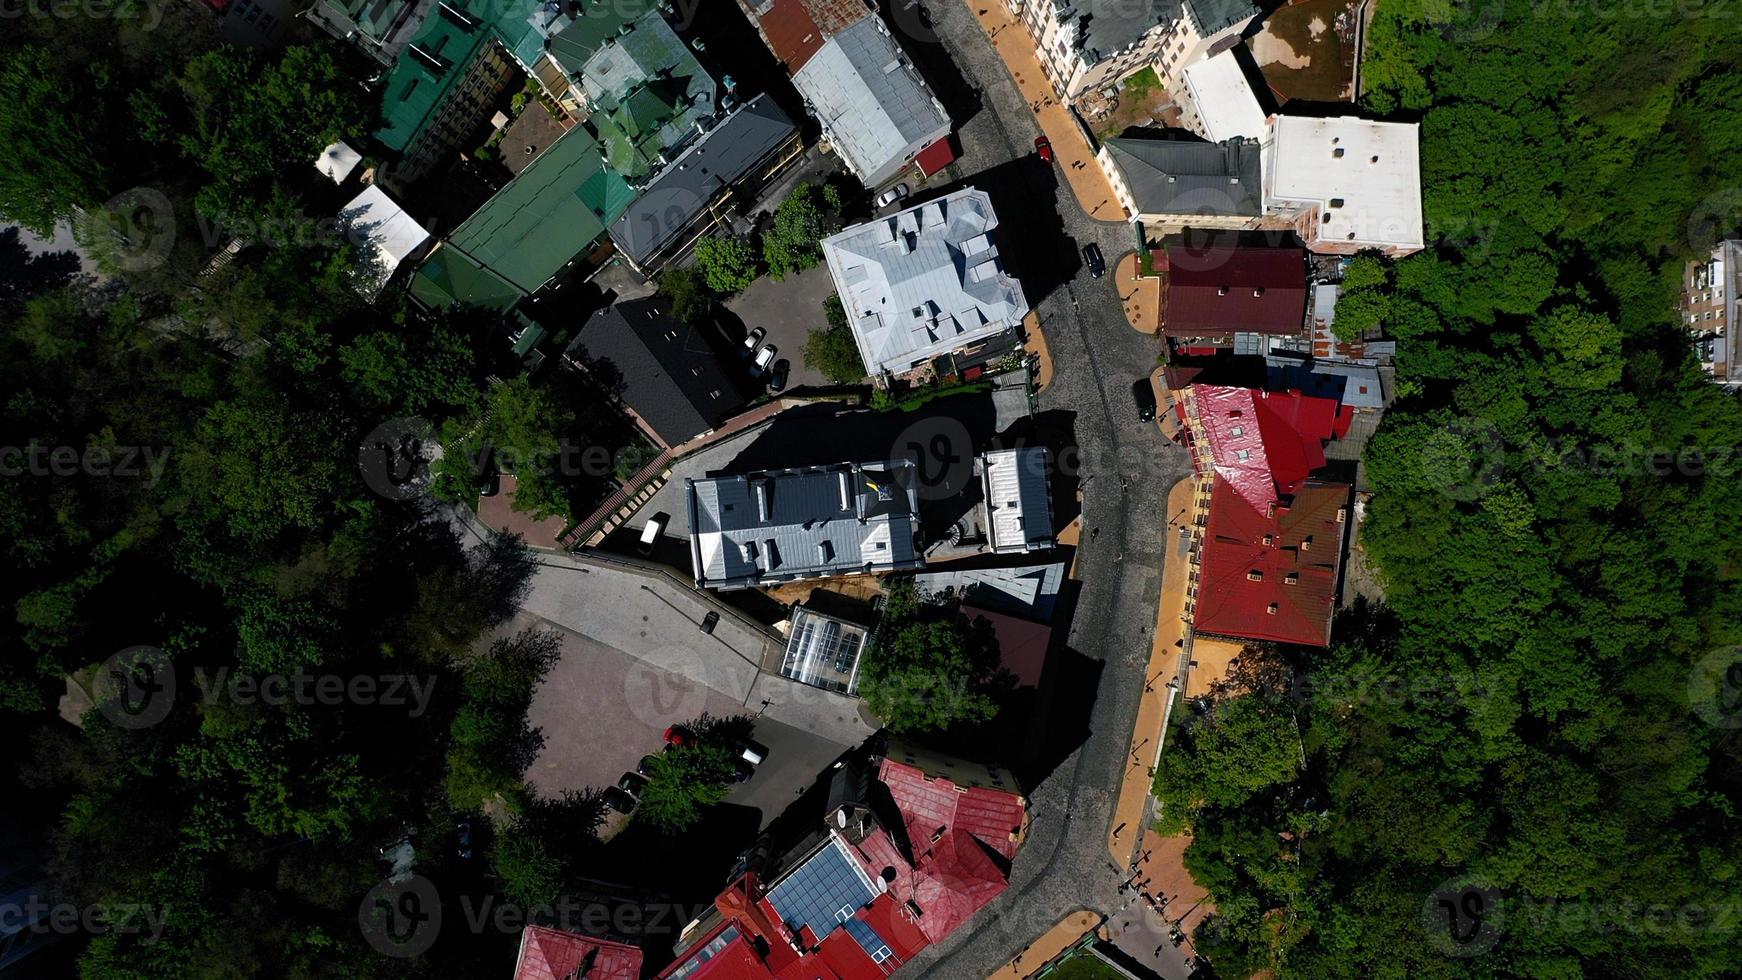 vue aérienne de la place sofia et de la place mykhailivska photo